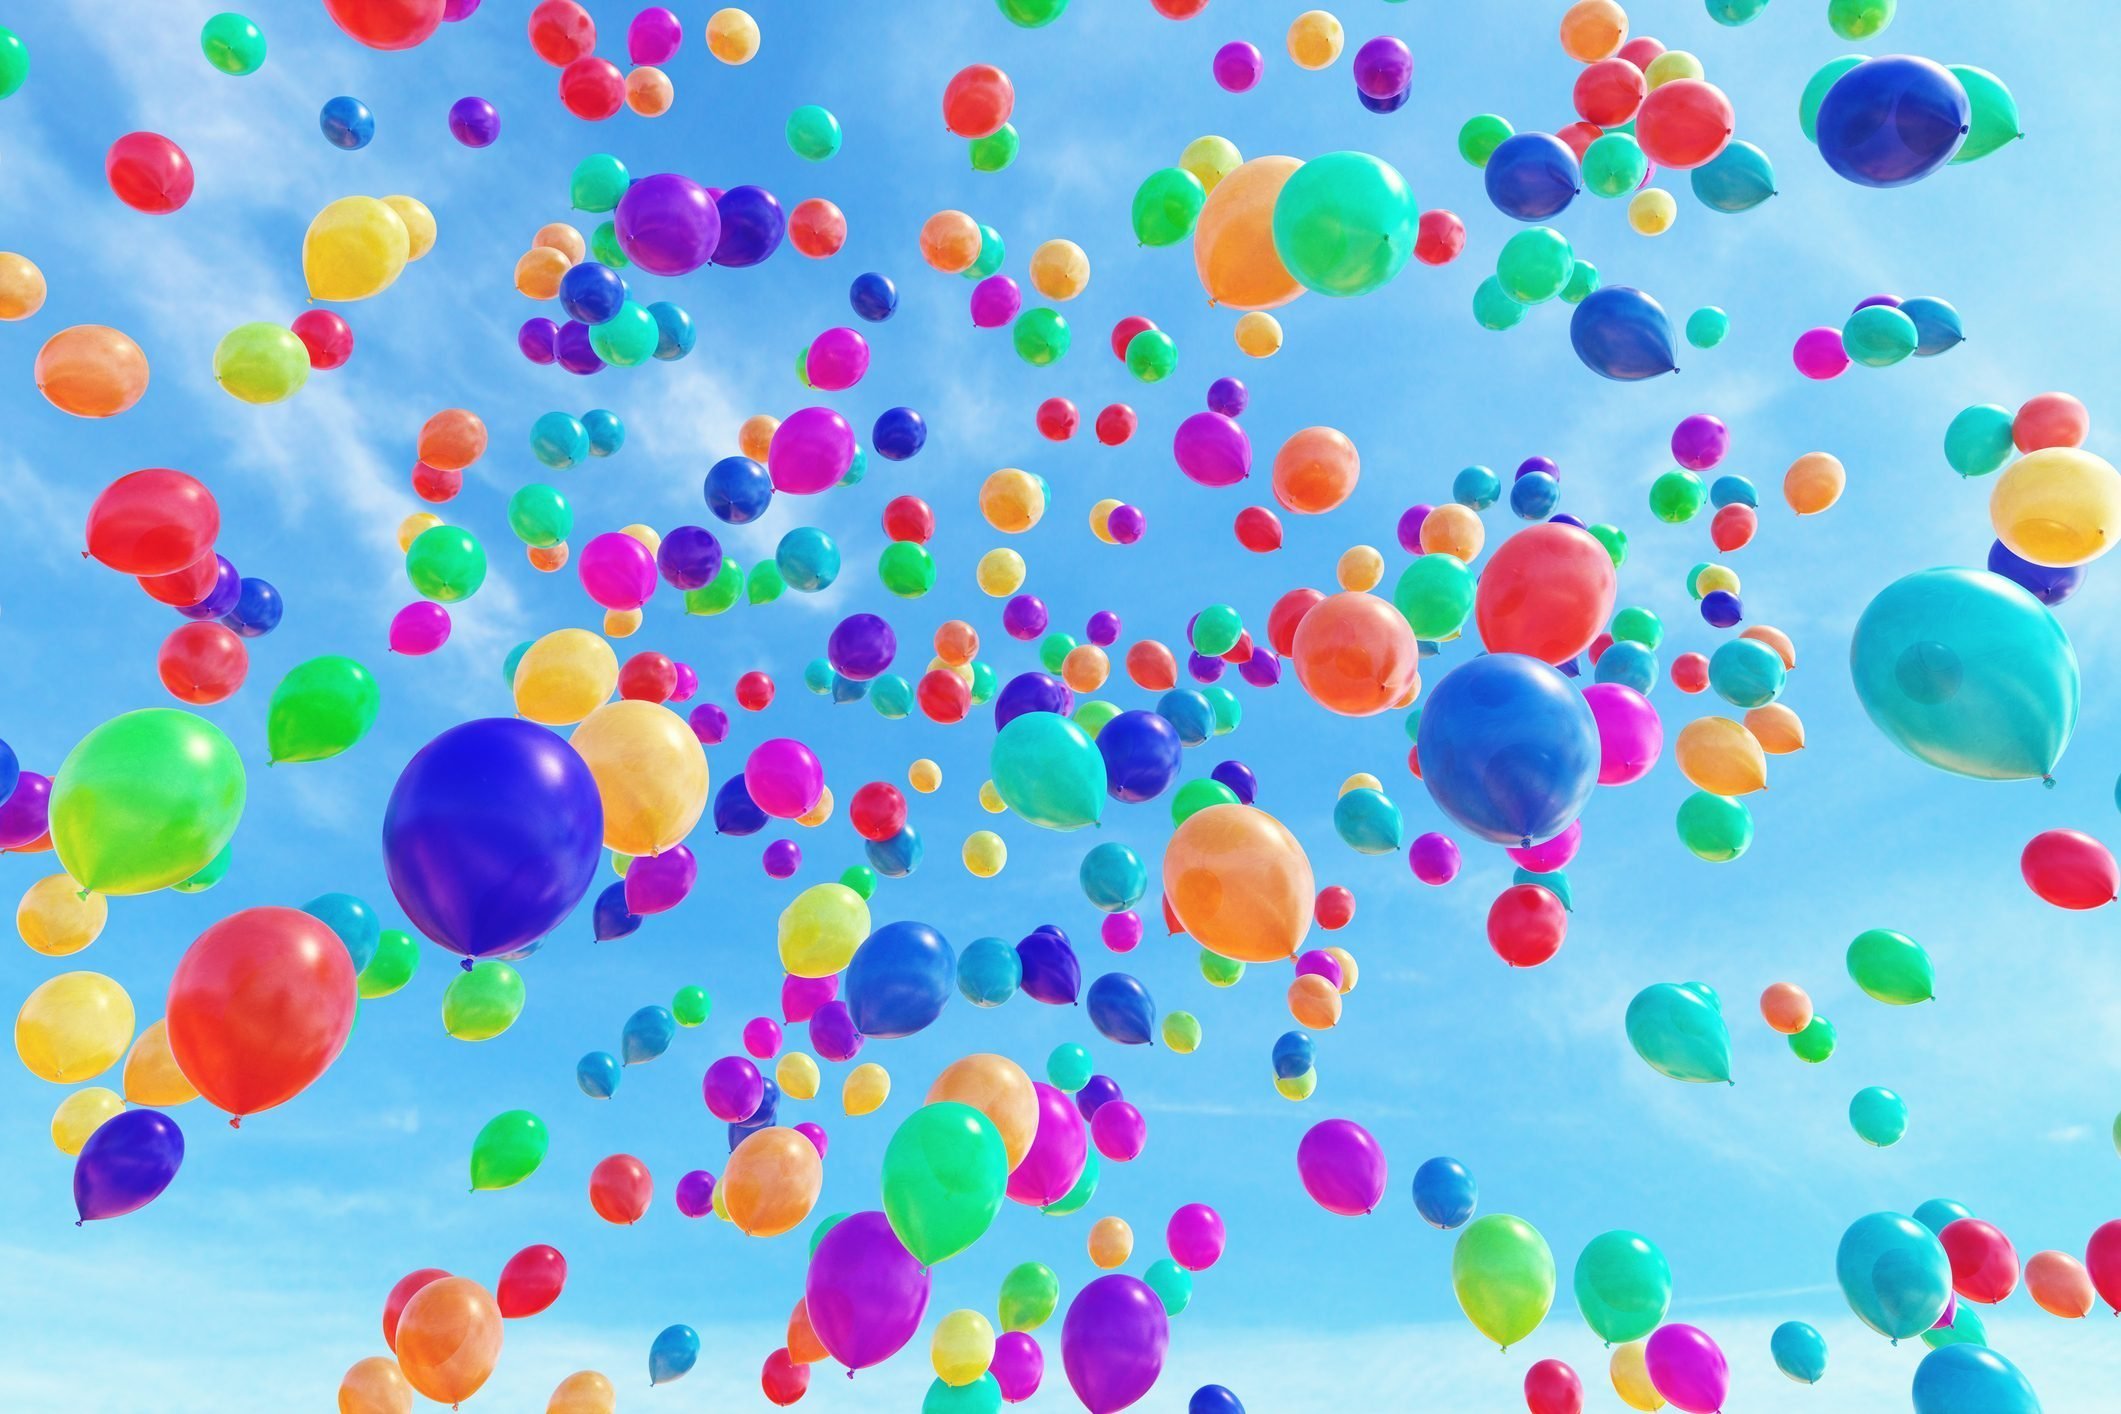 Красивые картинки с шариками. Цветные шары в небе. Воздушные шары. Разноцветные шарики воздушные. Воздушные шарики в небе.